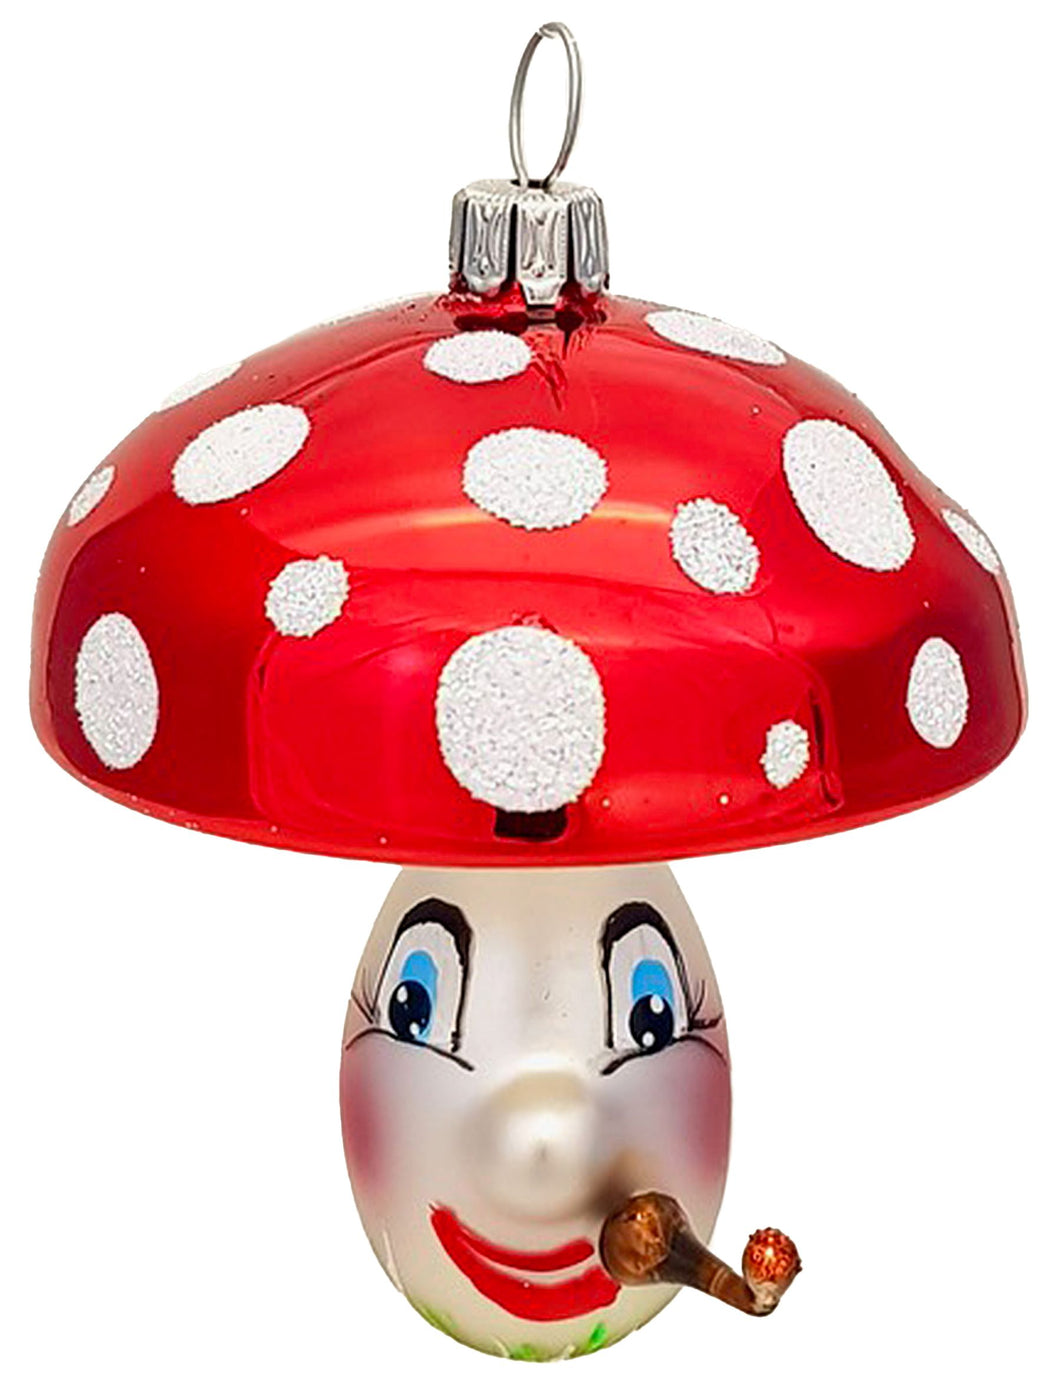 Mushroom Max -  3